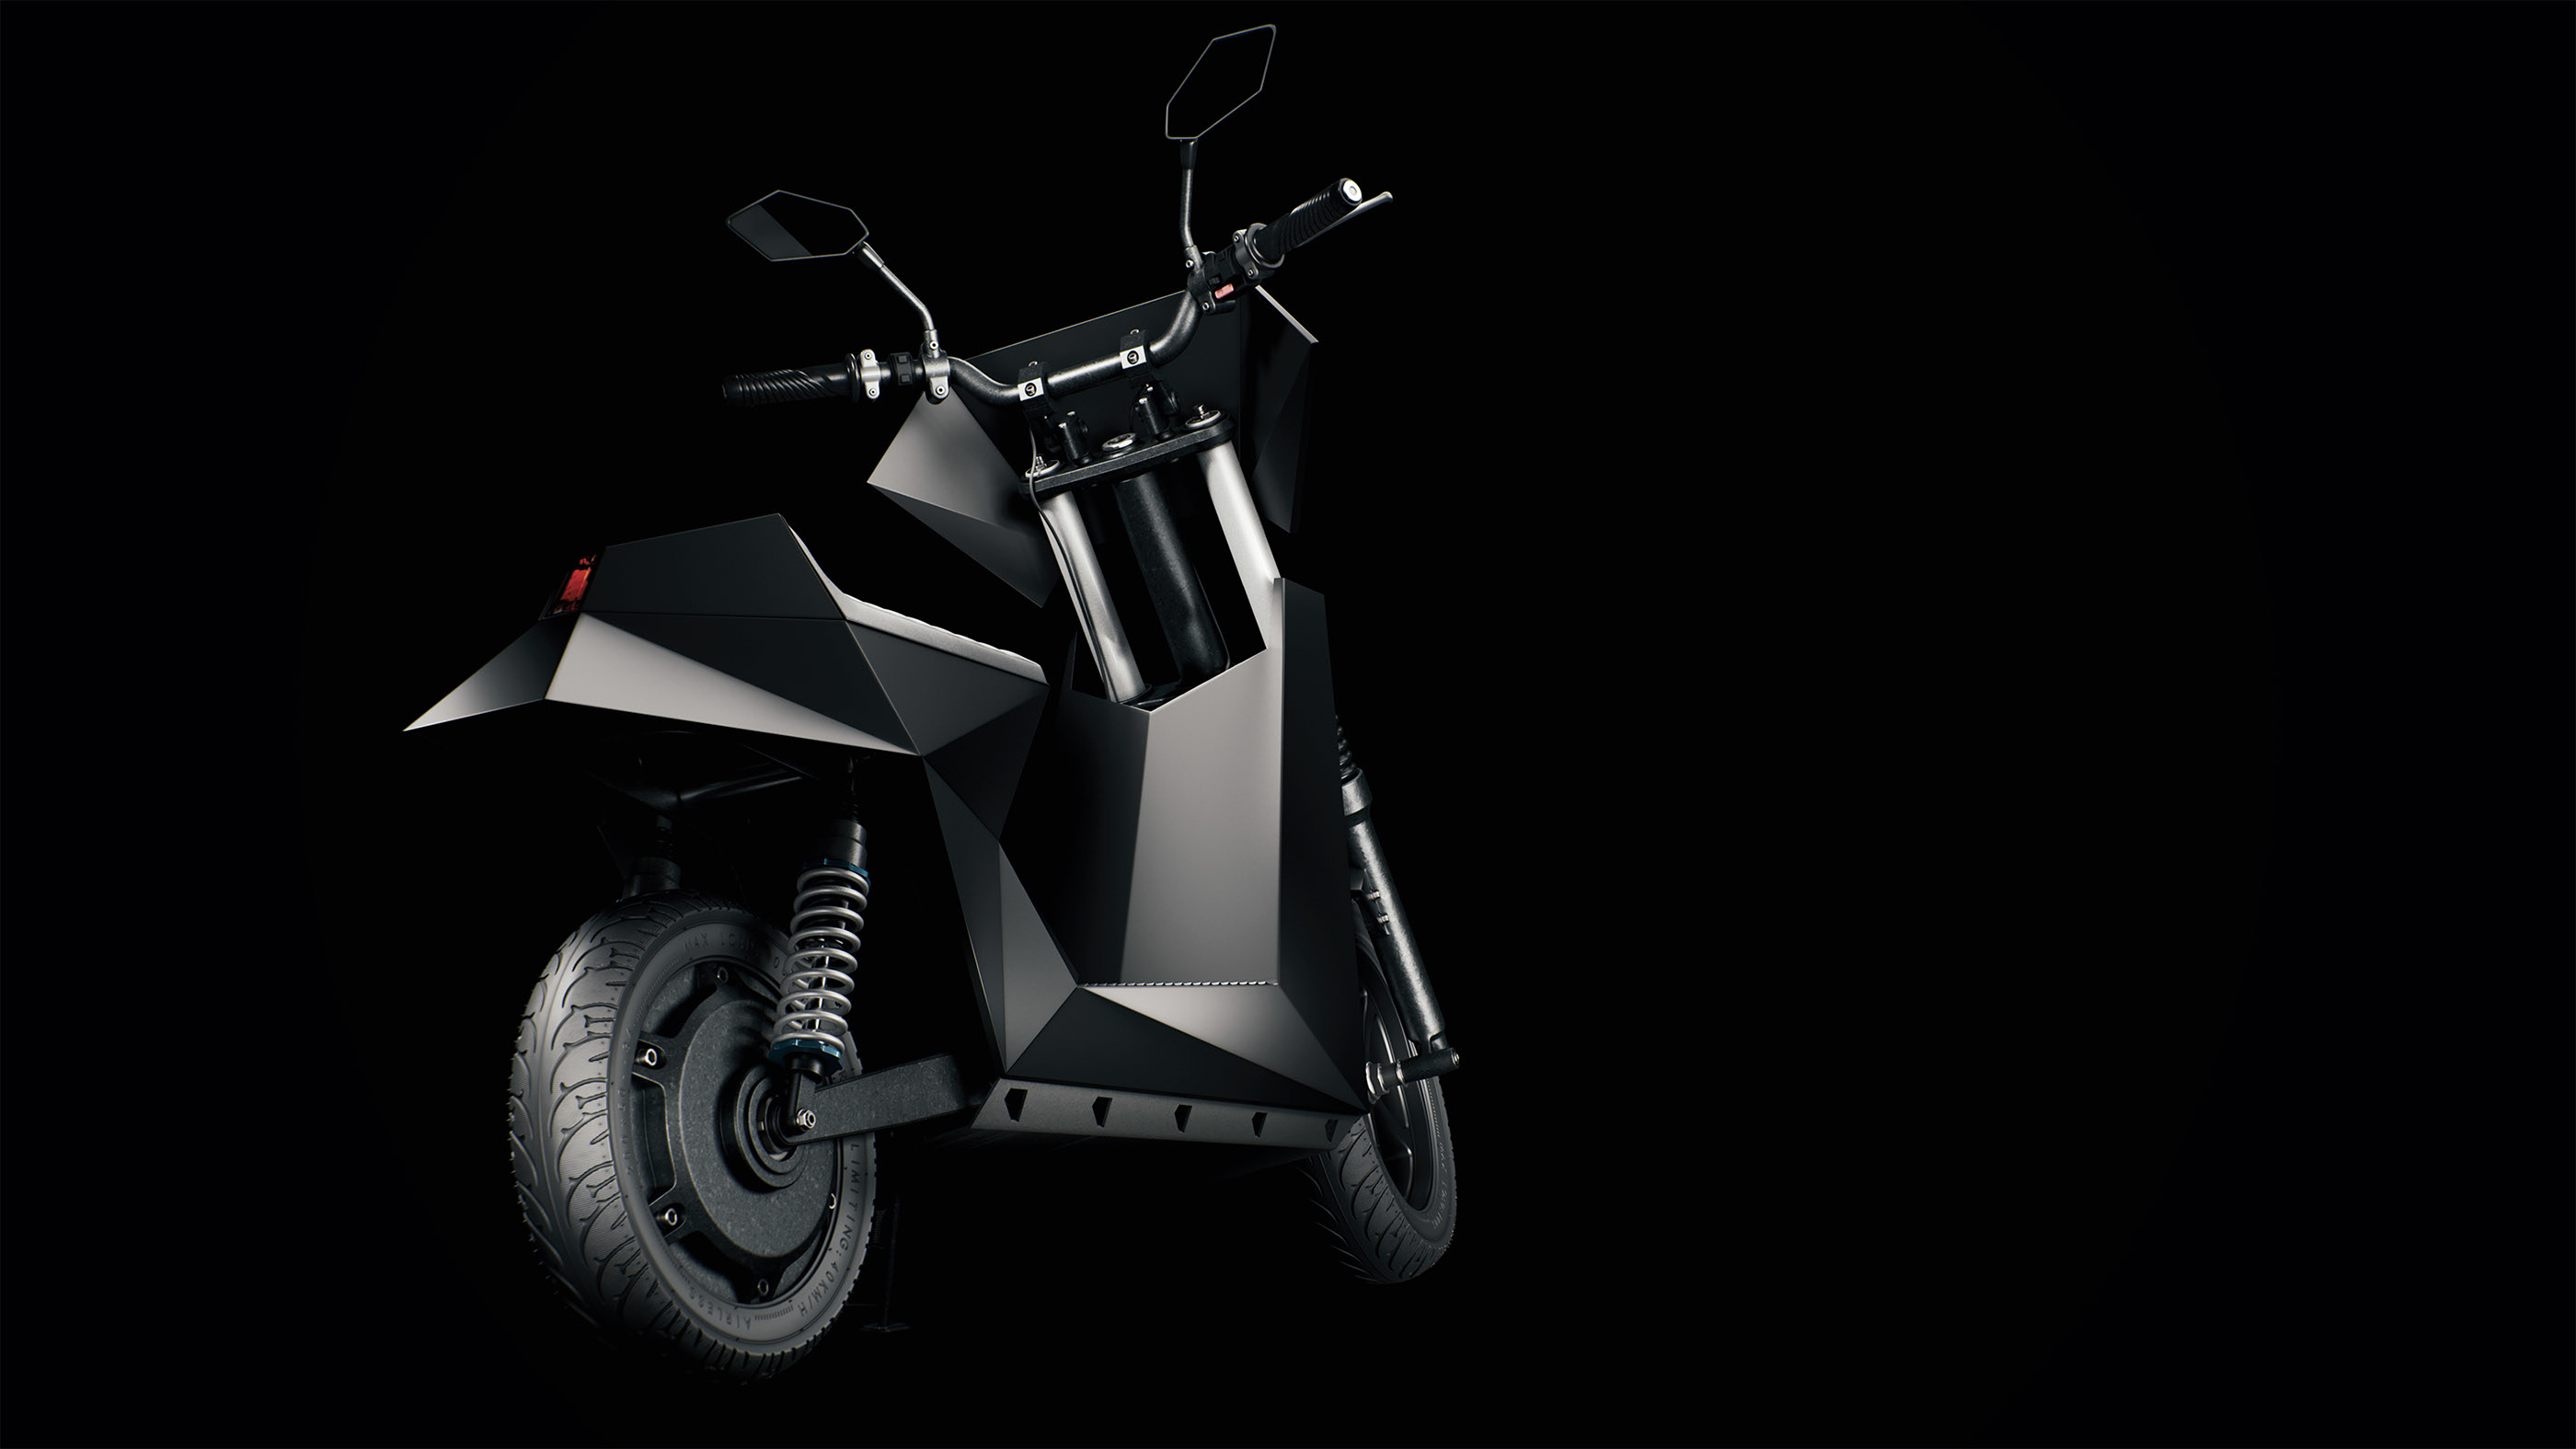 一个超级完美的摩托车3d模型设计超级酷炫开眼界了